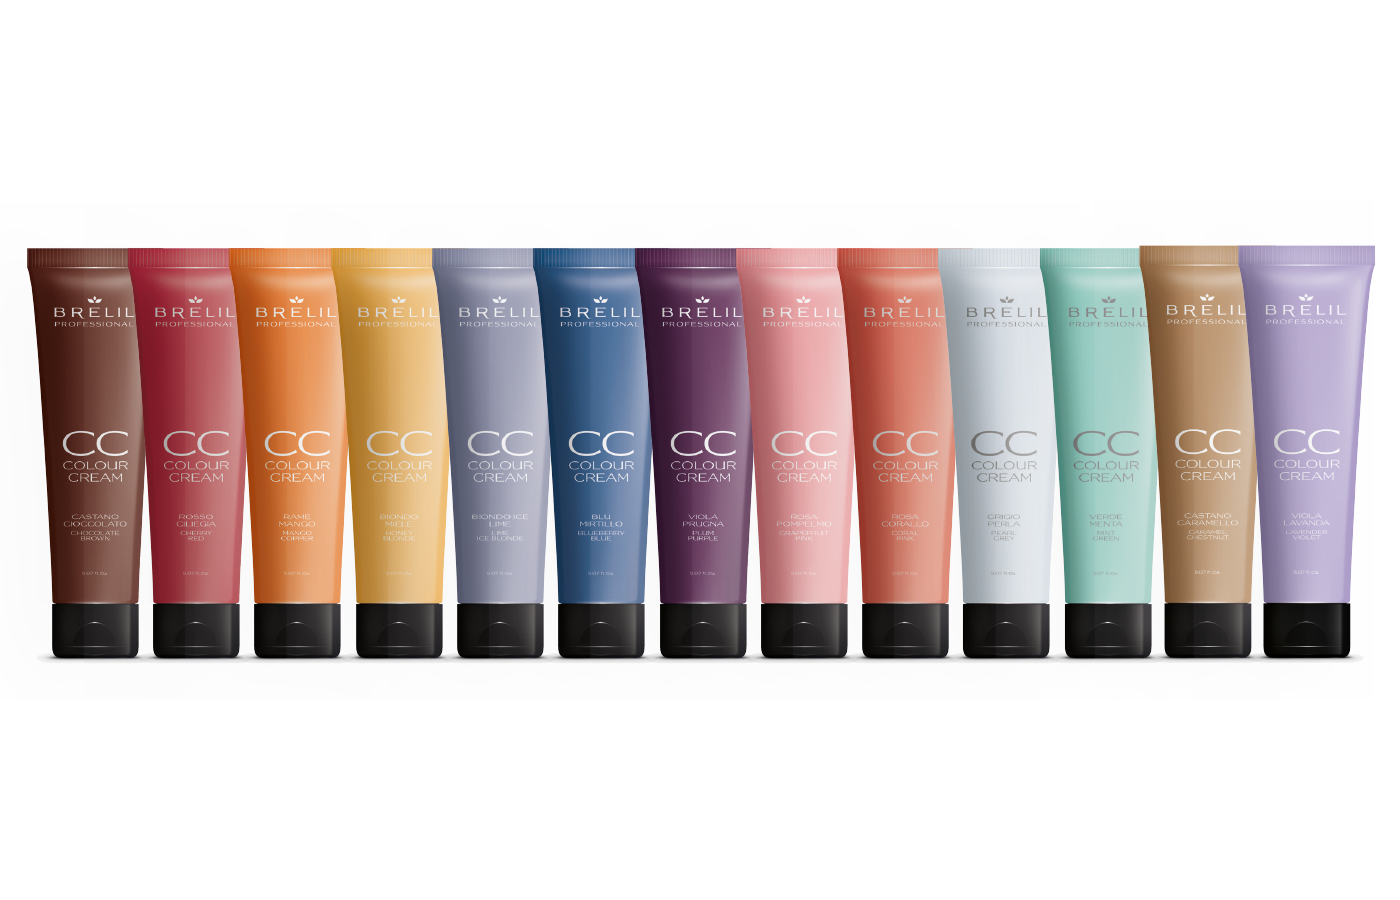 CC Colour Cream